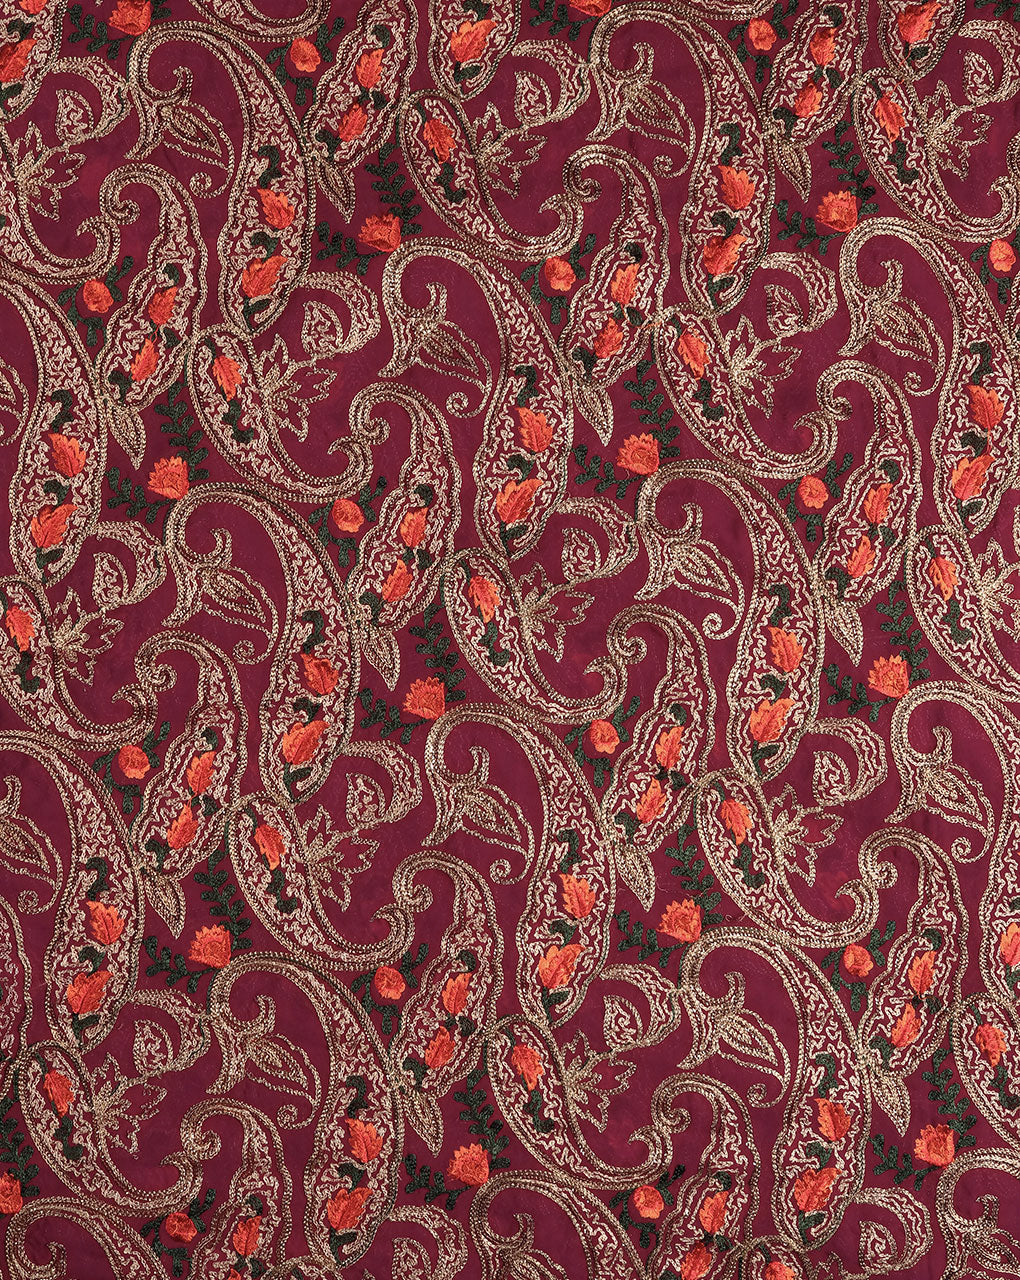 Embroidered Zari Work Viscose Georgette Fabric - Fabriclore.com